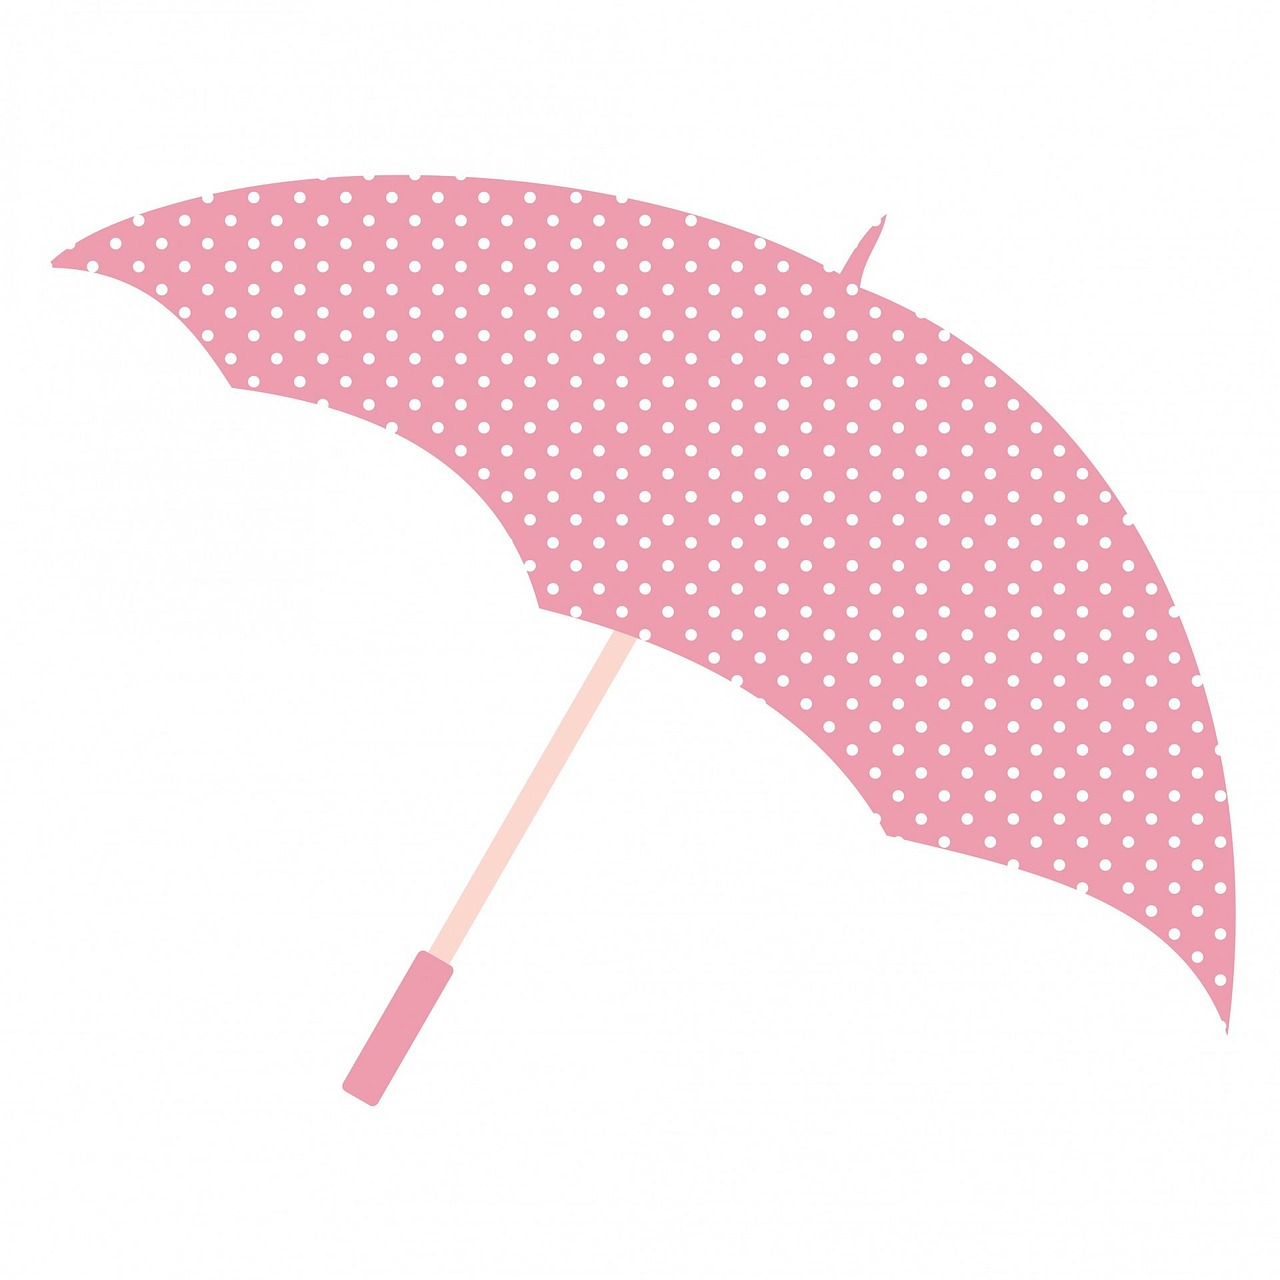 umbrella pink polka dots free photo